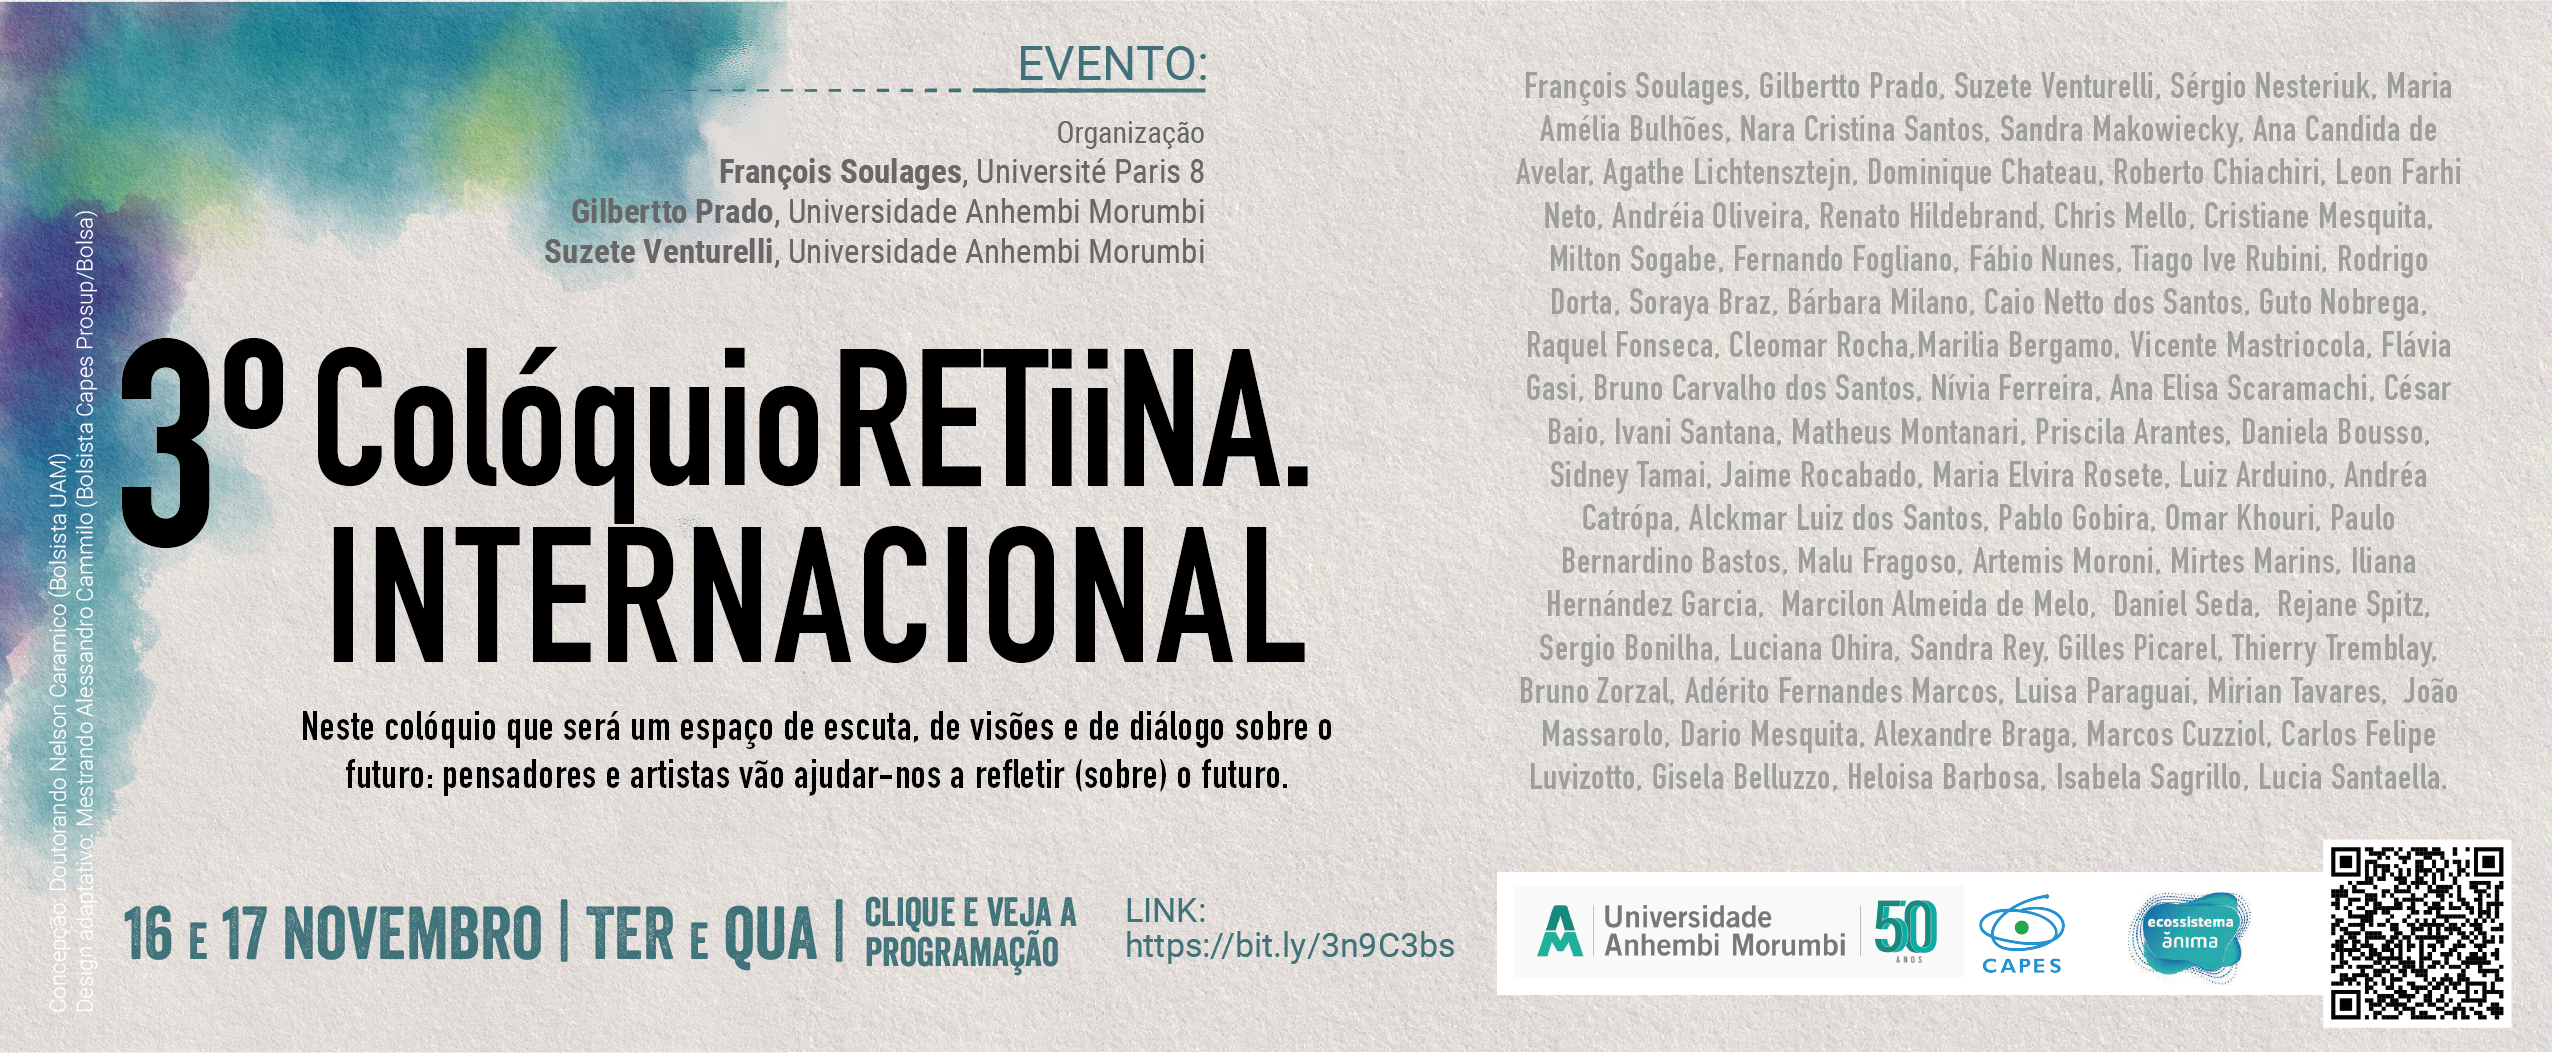 Banner - 3 colloquium Retiina International